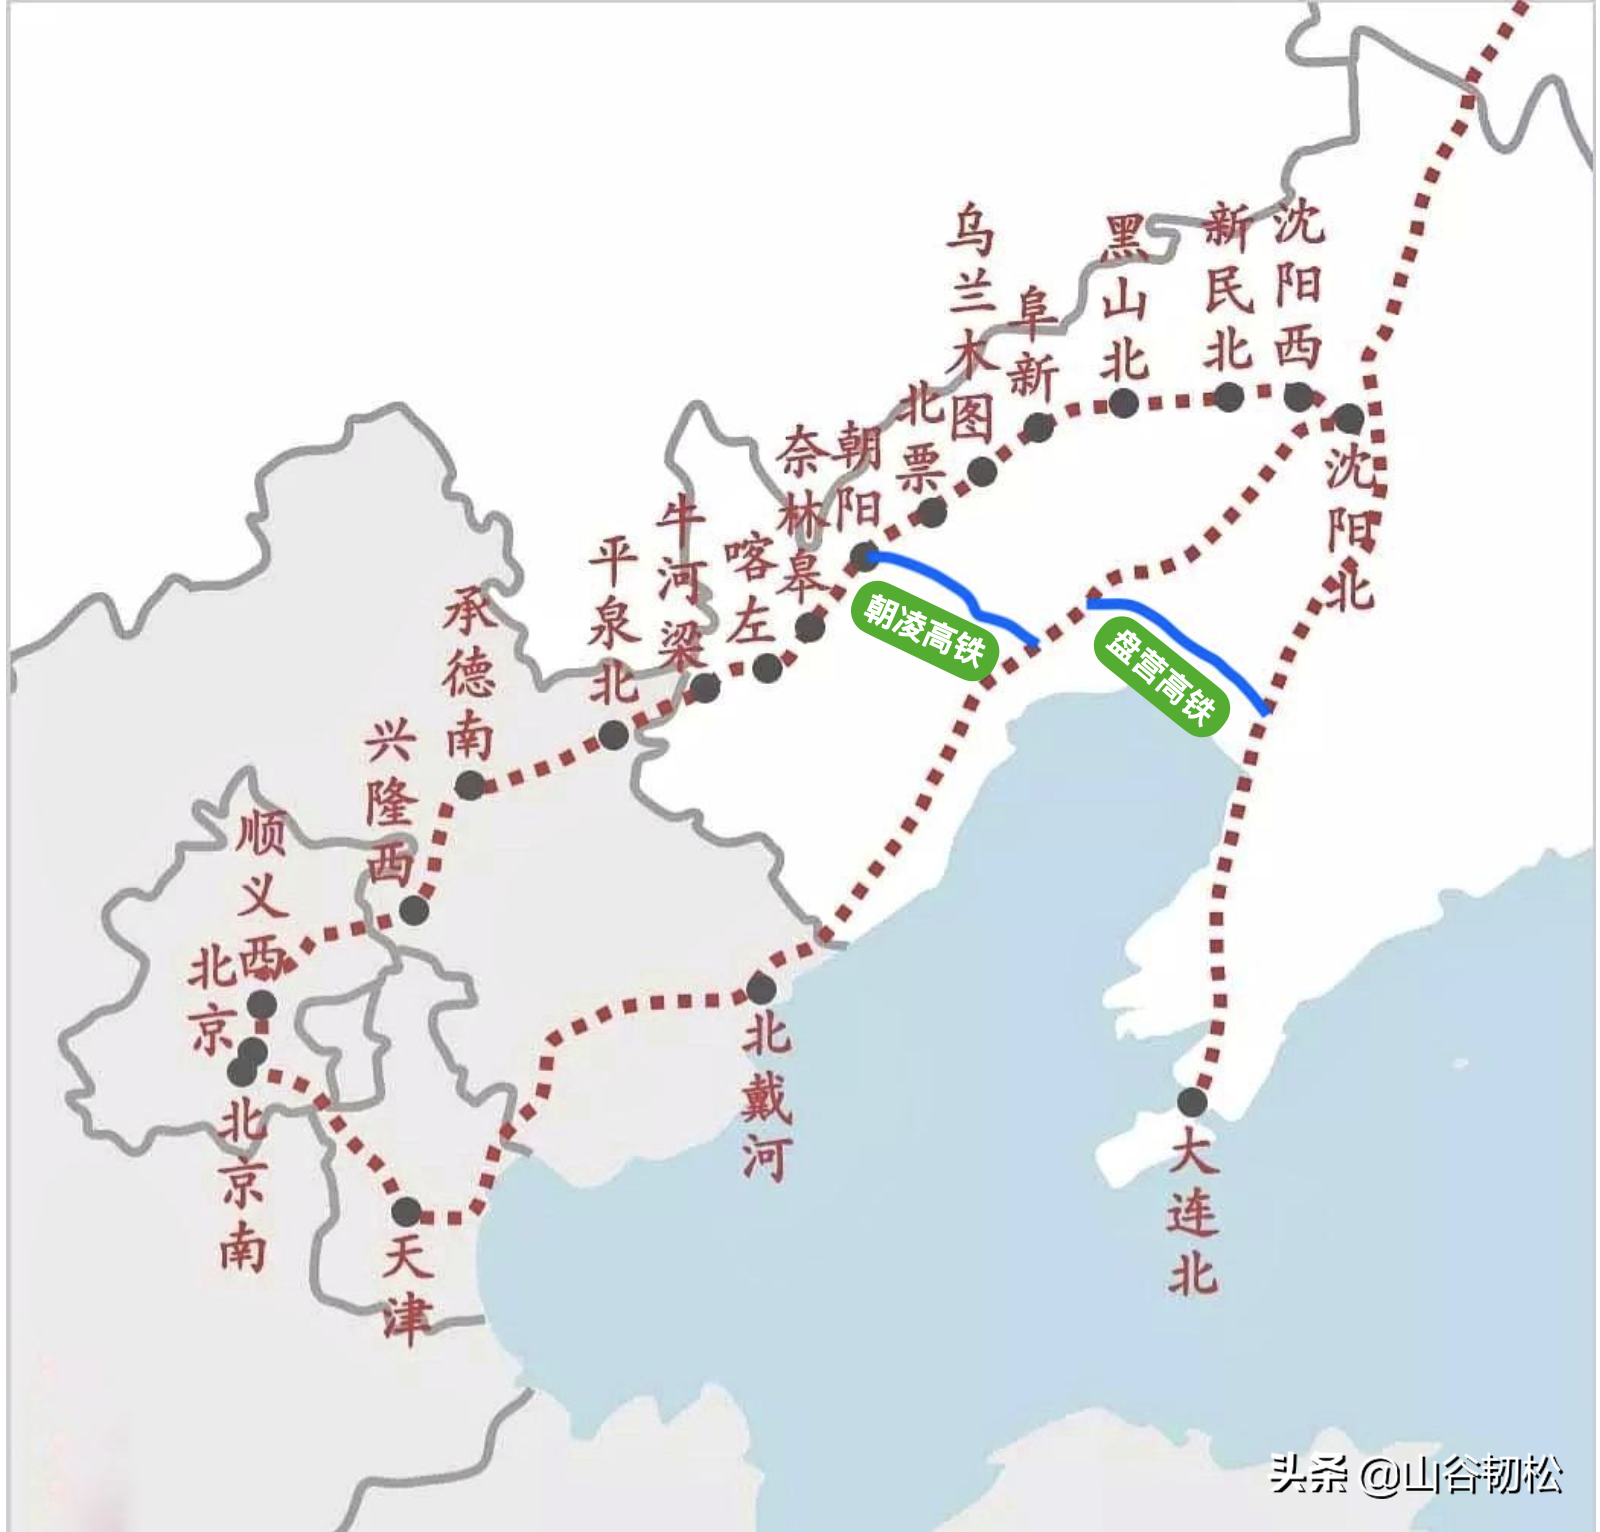 京秦高铁线路图图片